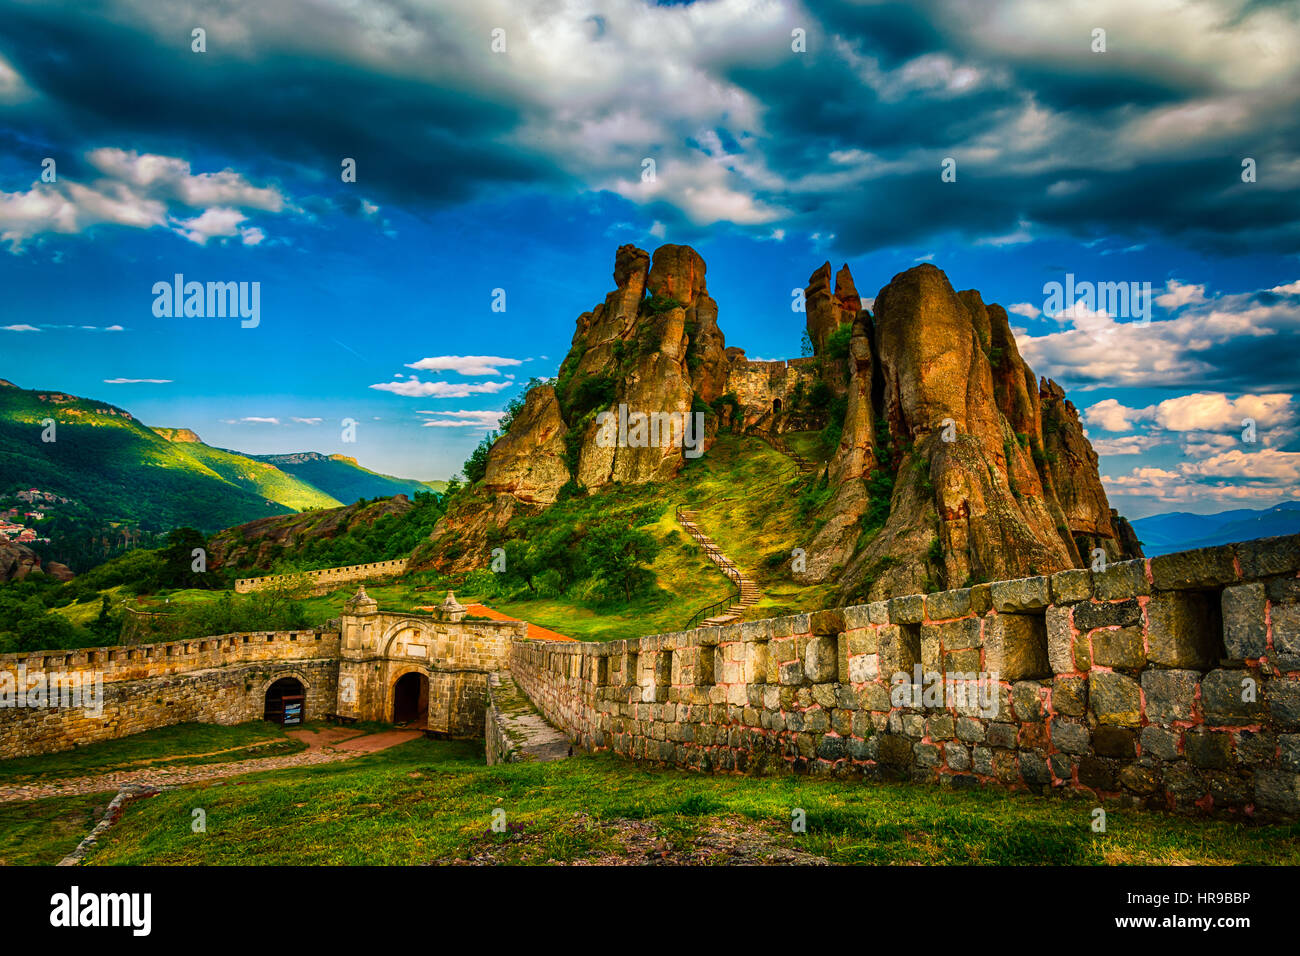 La forteresse de Belogradchik, également connu sous le nom de Kaleto, est une ancienne forteresse dans la ville célèbre pour ses formations rocheuses impressionnantes et uniques. Banque D'Images